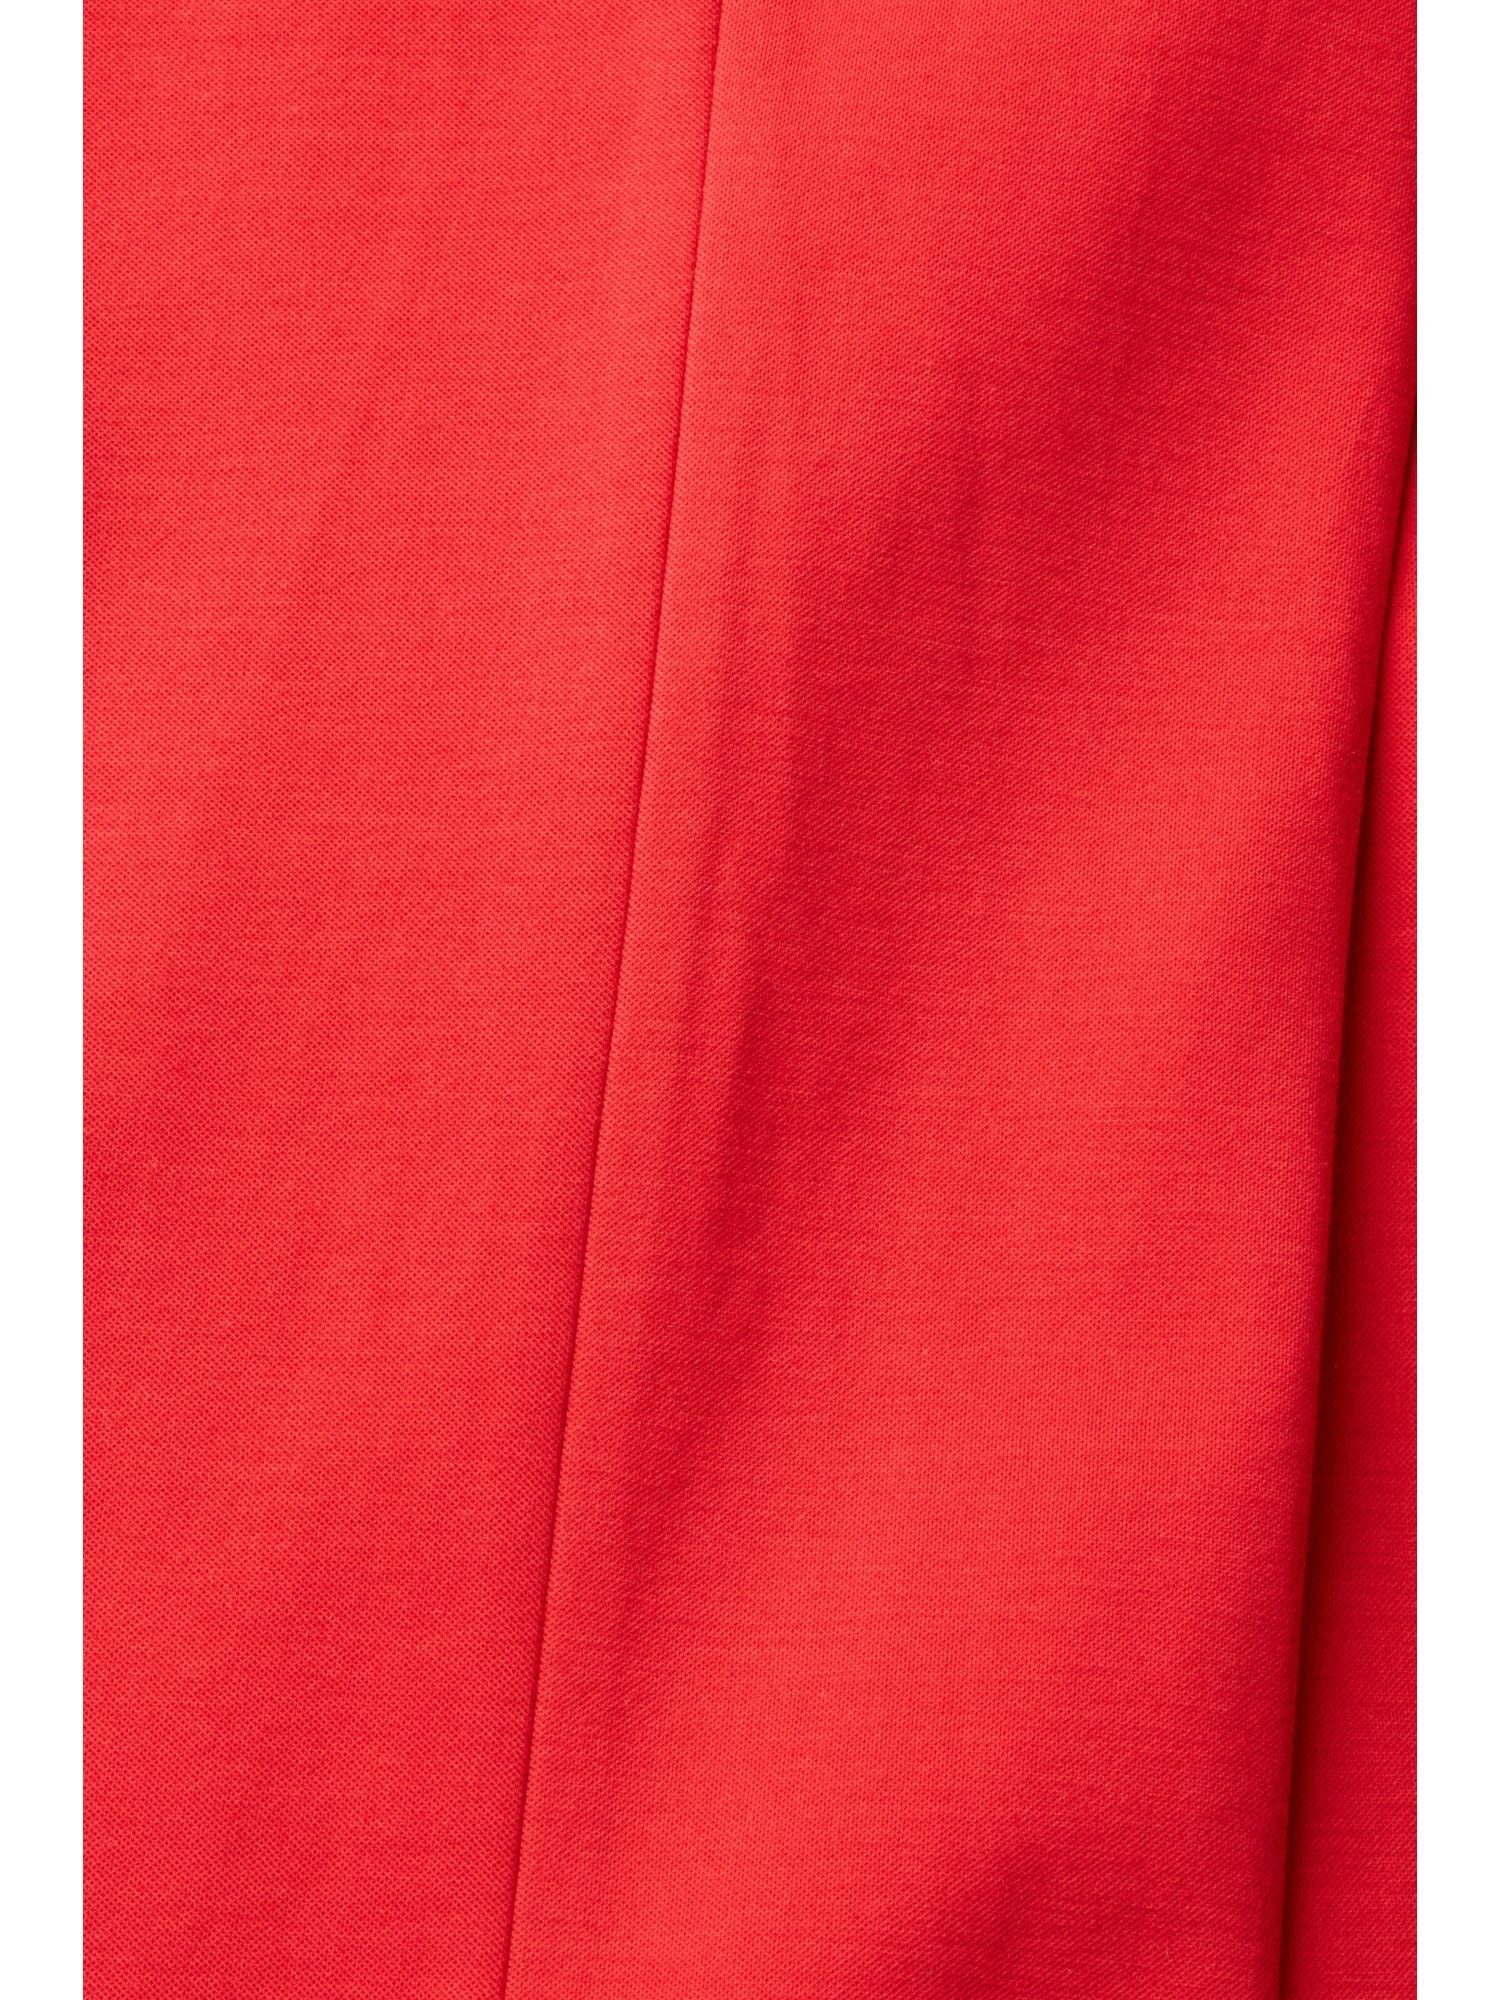 mit Esprit Bund RED Stretchige hohem Pants Collection Stoffhose DARK Bootcut